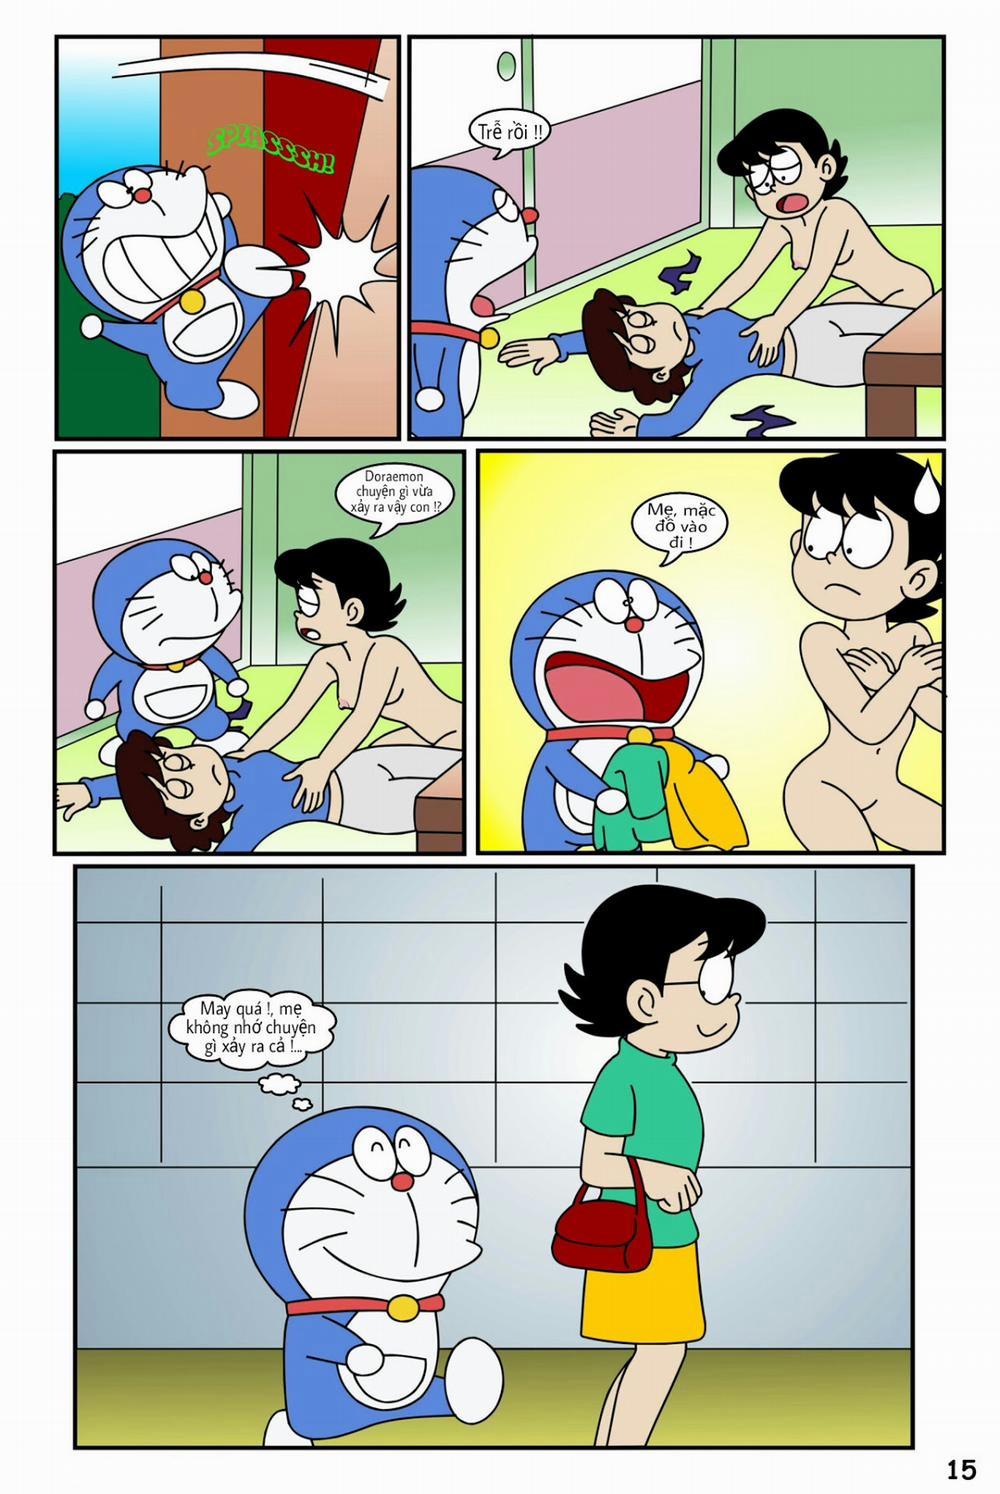 Tuyển Tập Doraemon Doujinshi 18+ Chương 19 Kem ch s i 1 Trang 17